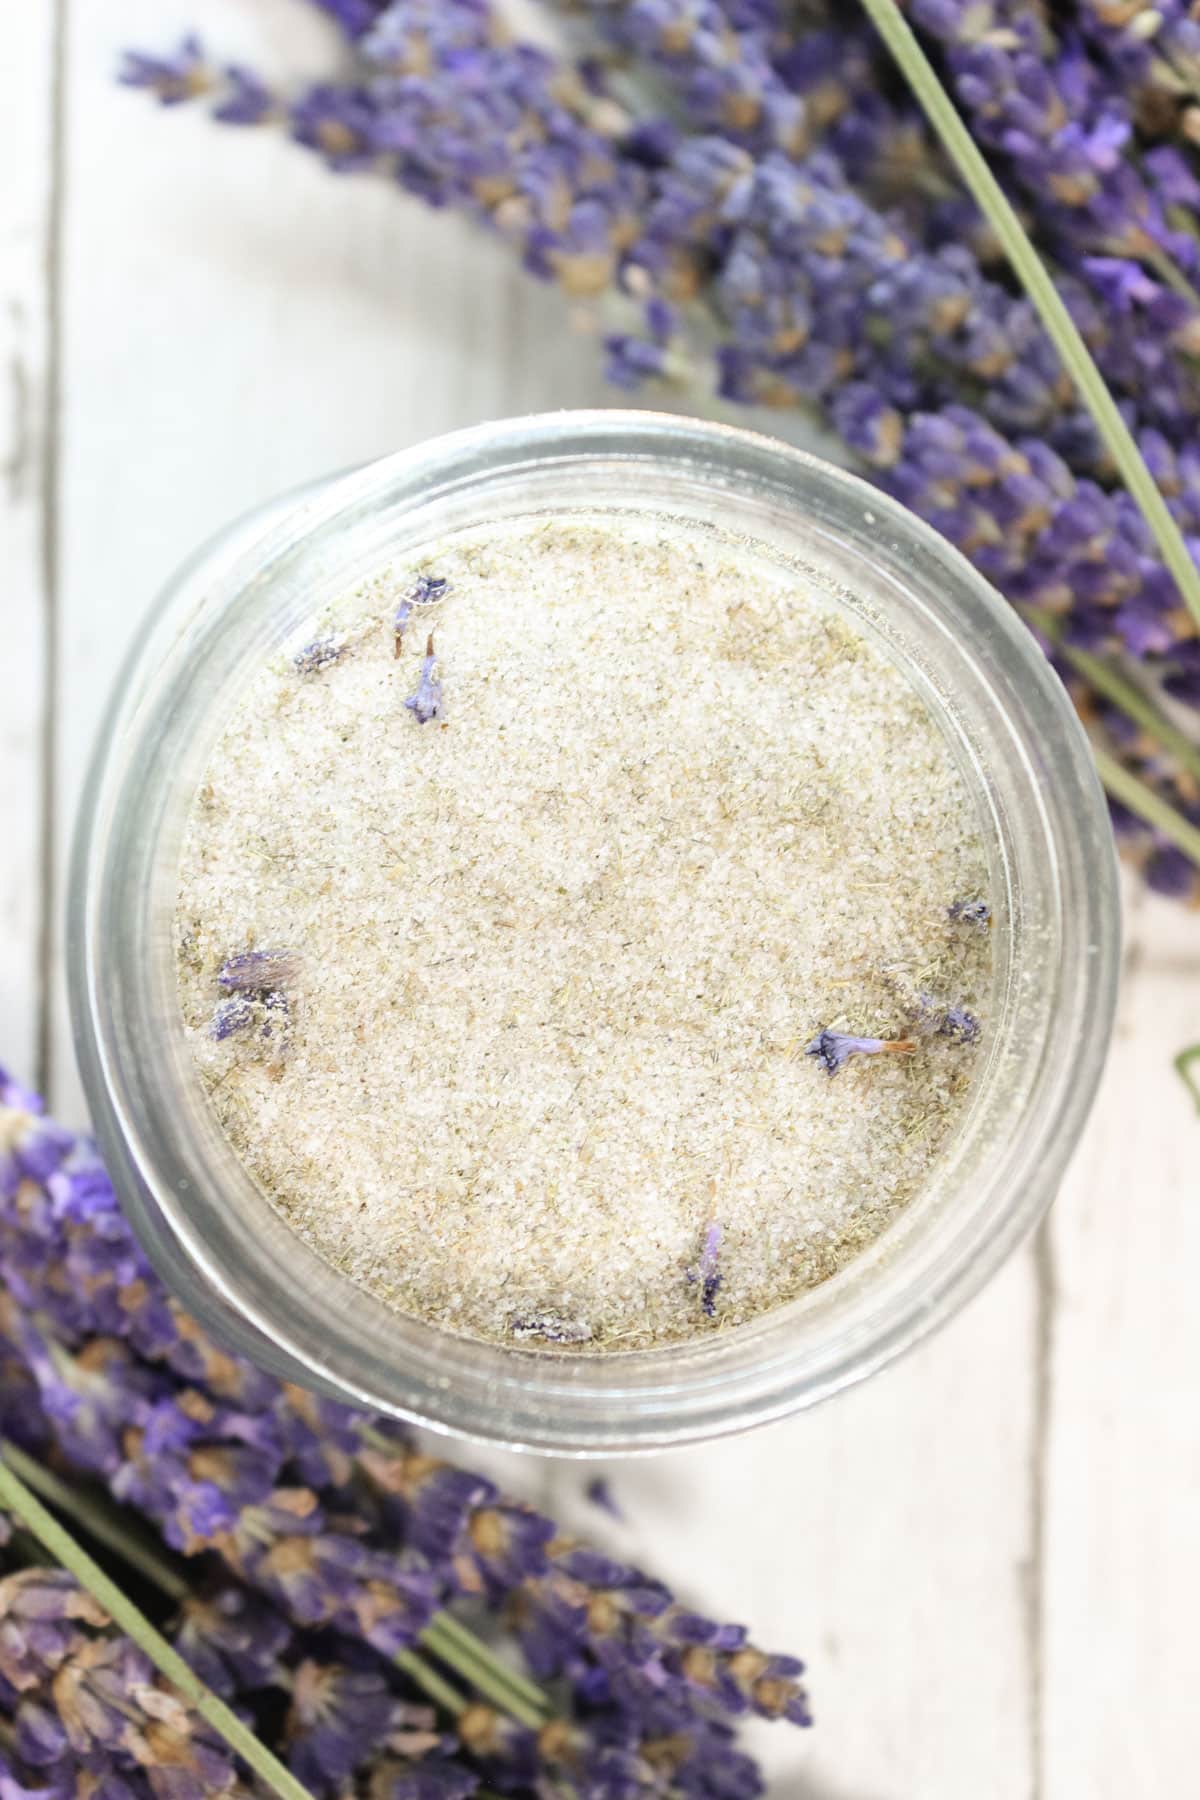 A jar with lavender sugar.